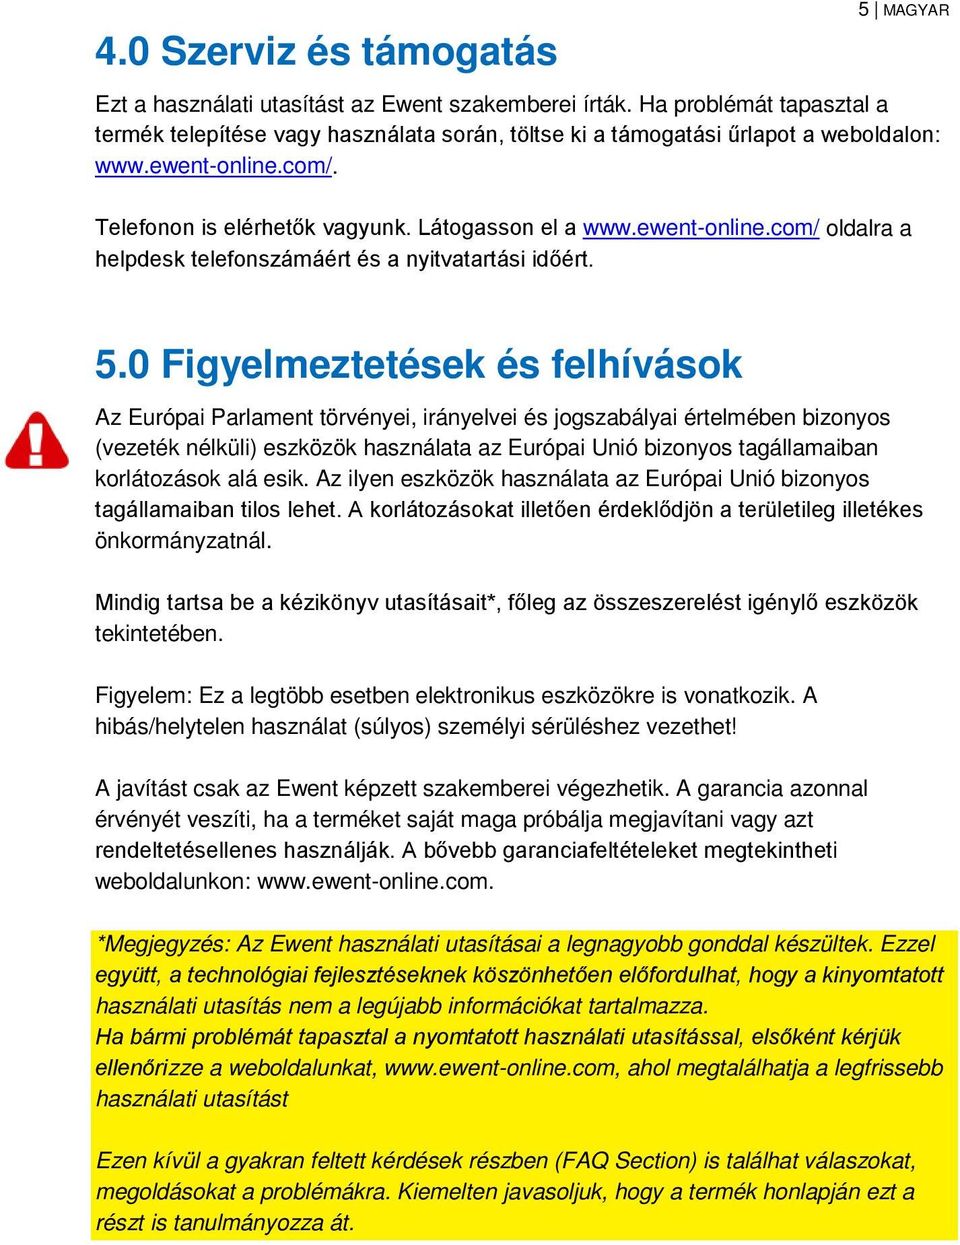 5.0 Figyelmeztetések és felhívások Az Európai Parlament törvényei, irányelvei és jogszabályai értelmében bizonyos (vezeték nélküli) eszközök használata az Európai Unió bizonyos tagállamaiban